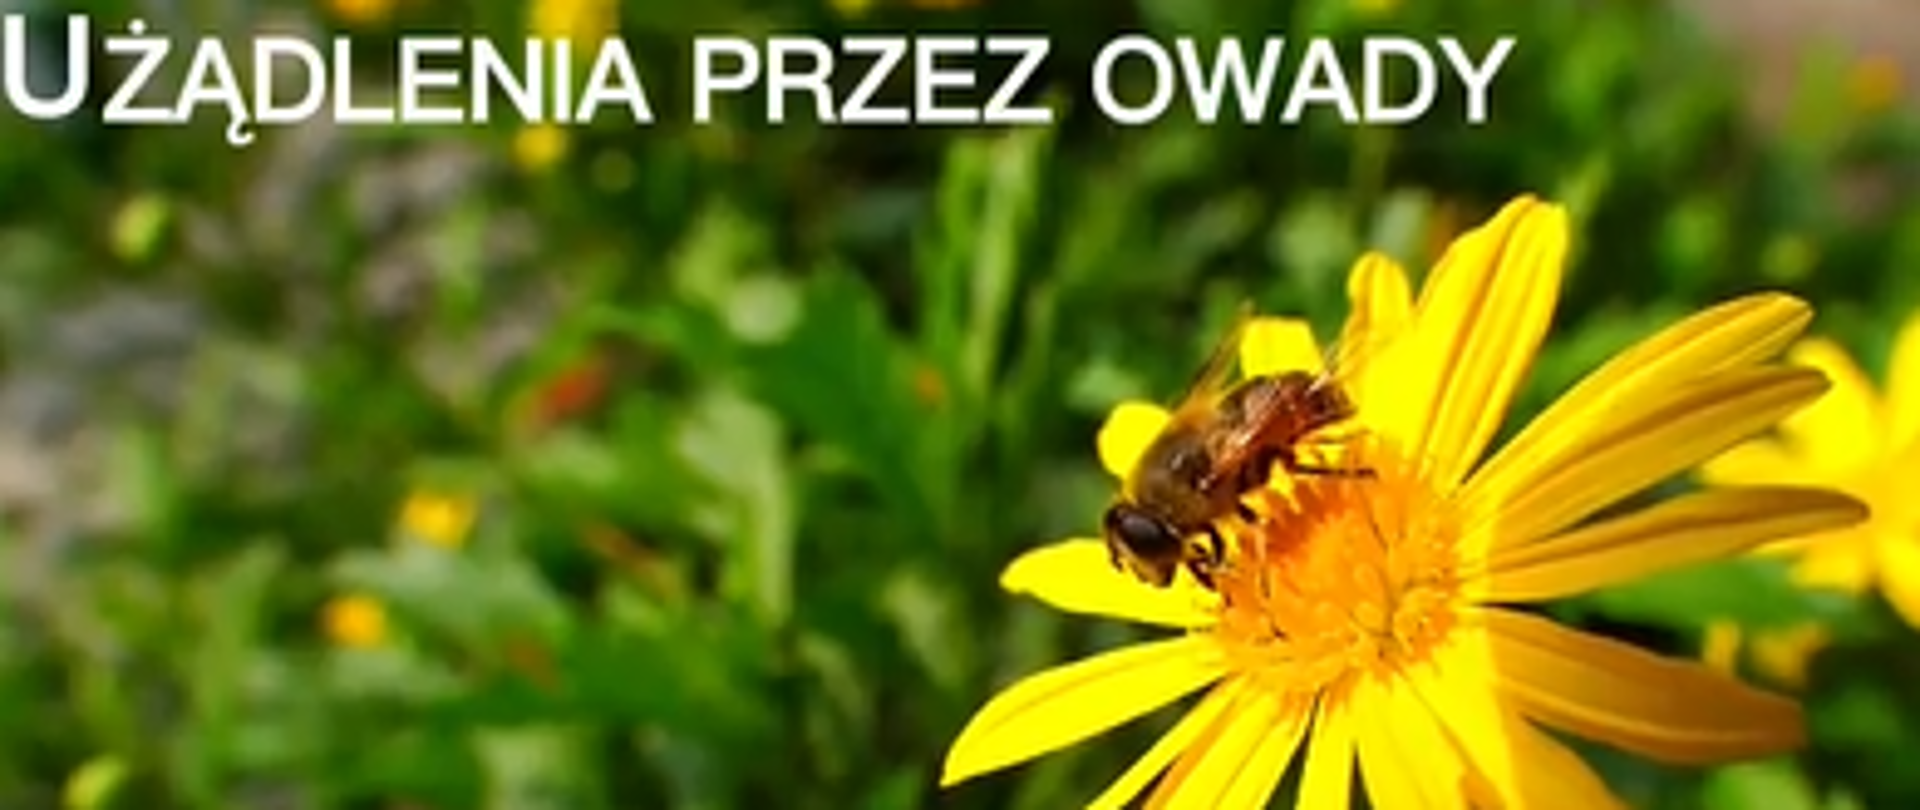 Fotografia pszczoły siedzącej na żółtym kwiatku, powyżej napis białą czcionką: "Użądlenia przez owady".